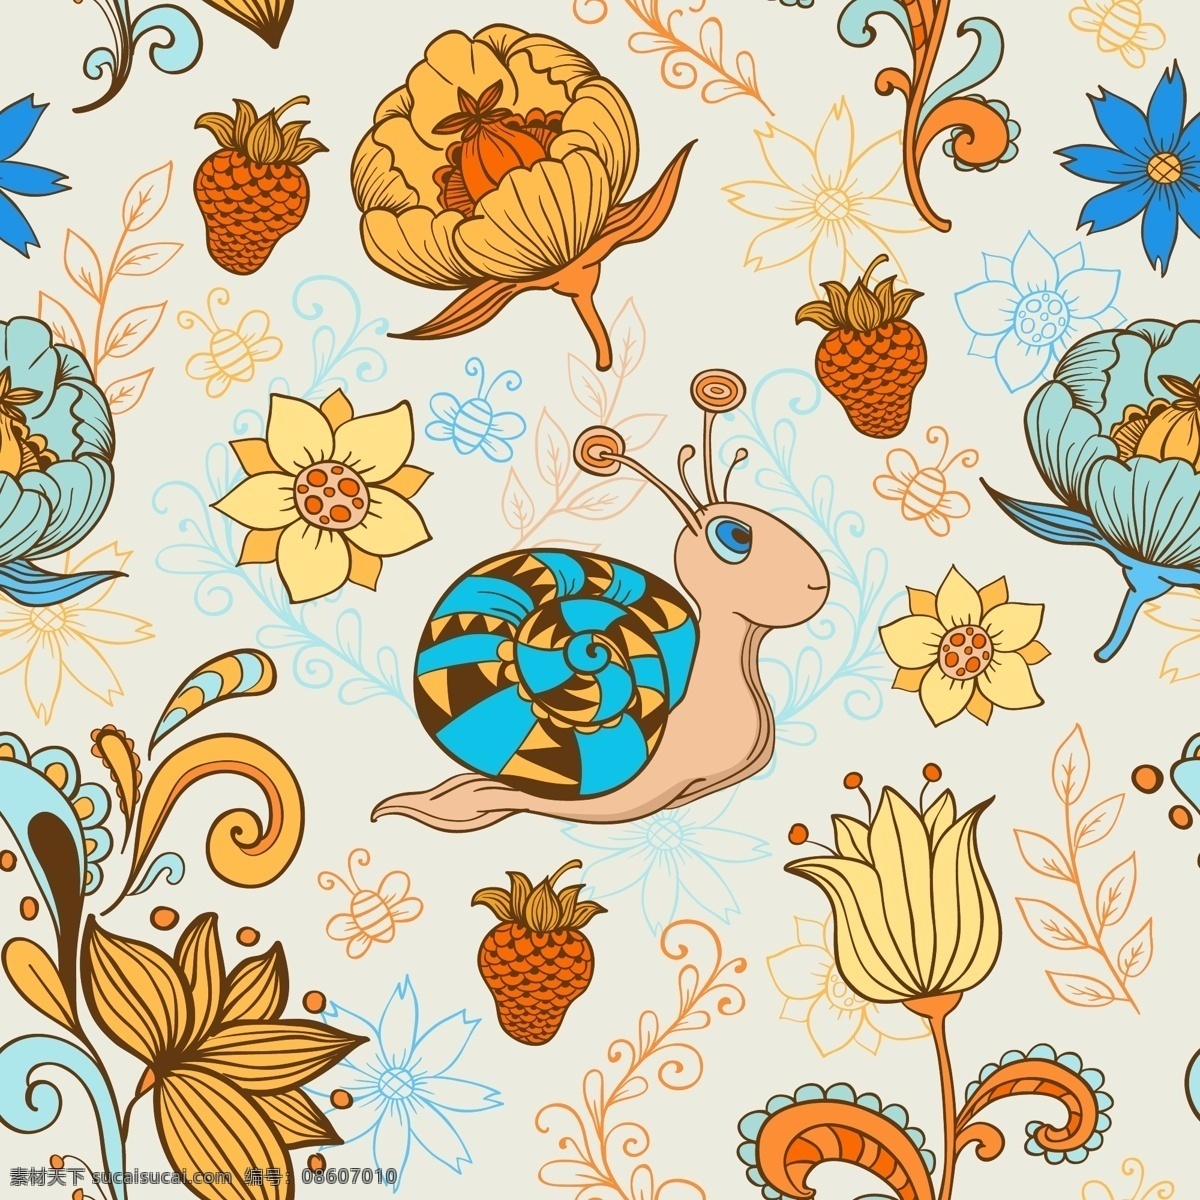 夏季 昆虫 花卉 图案 花卉图案 昆虫图案 蜗牛 夏季图案素材 植物